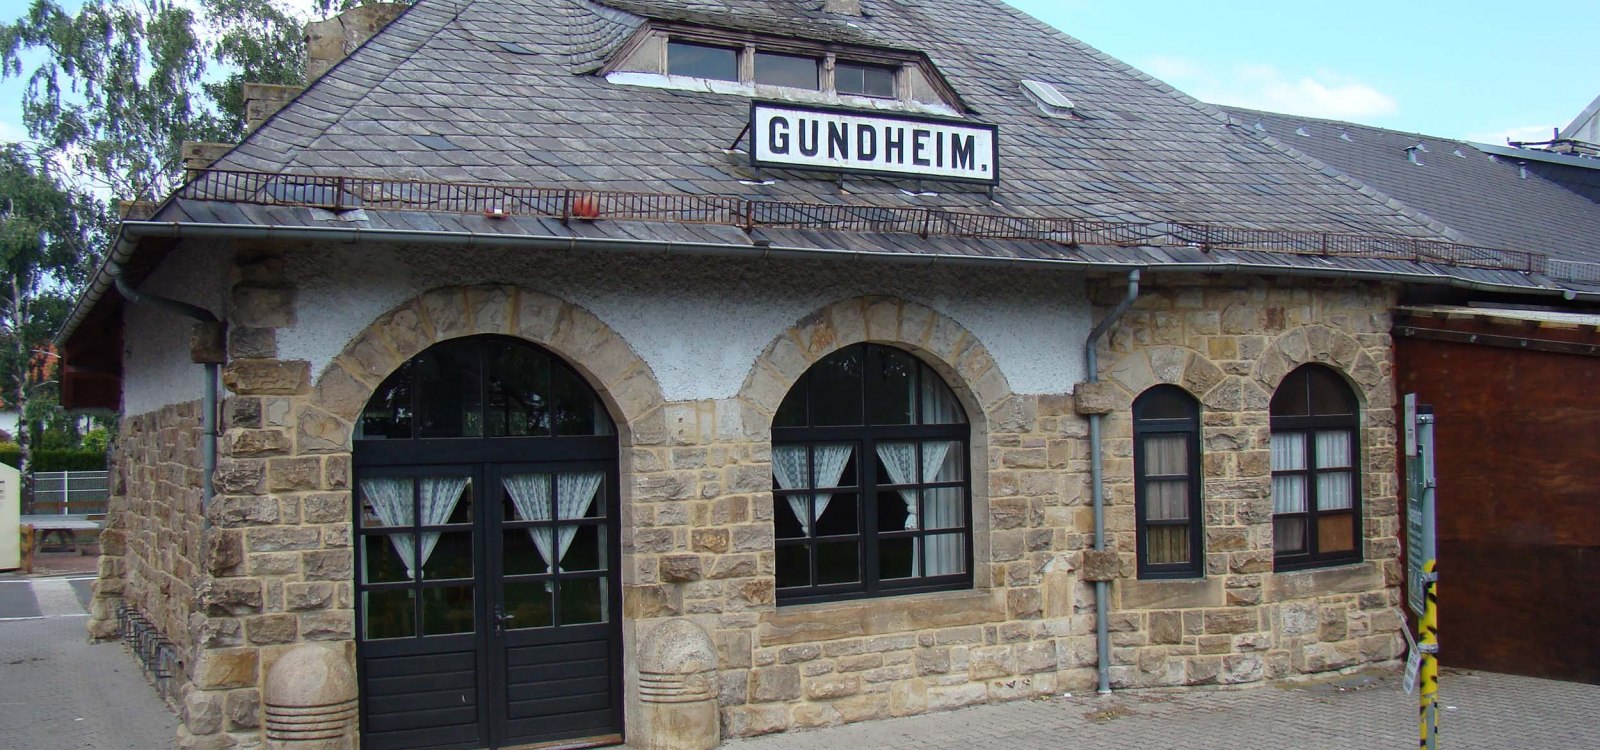 ehemaliger Bahnhof Gundheim, © Verbandsgemeinde Wonnegau / Michael Thier